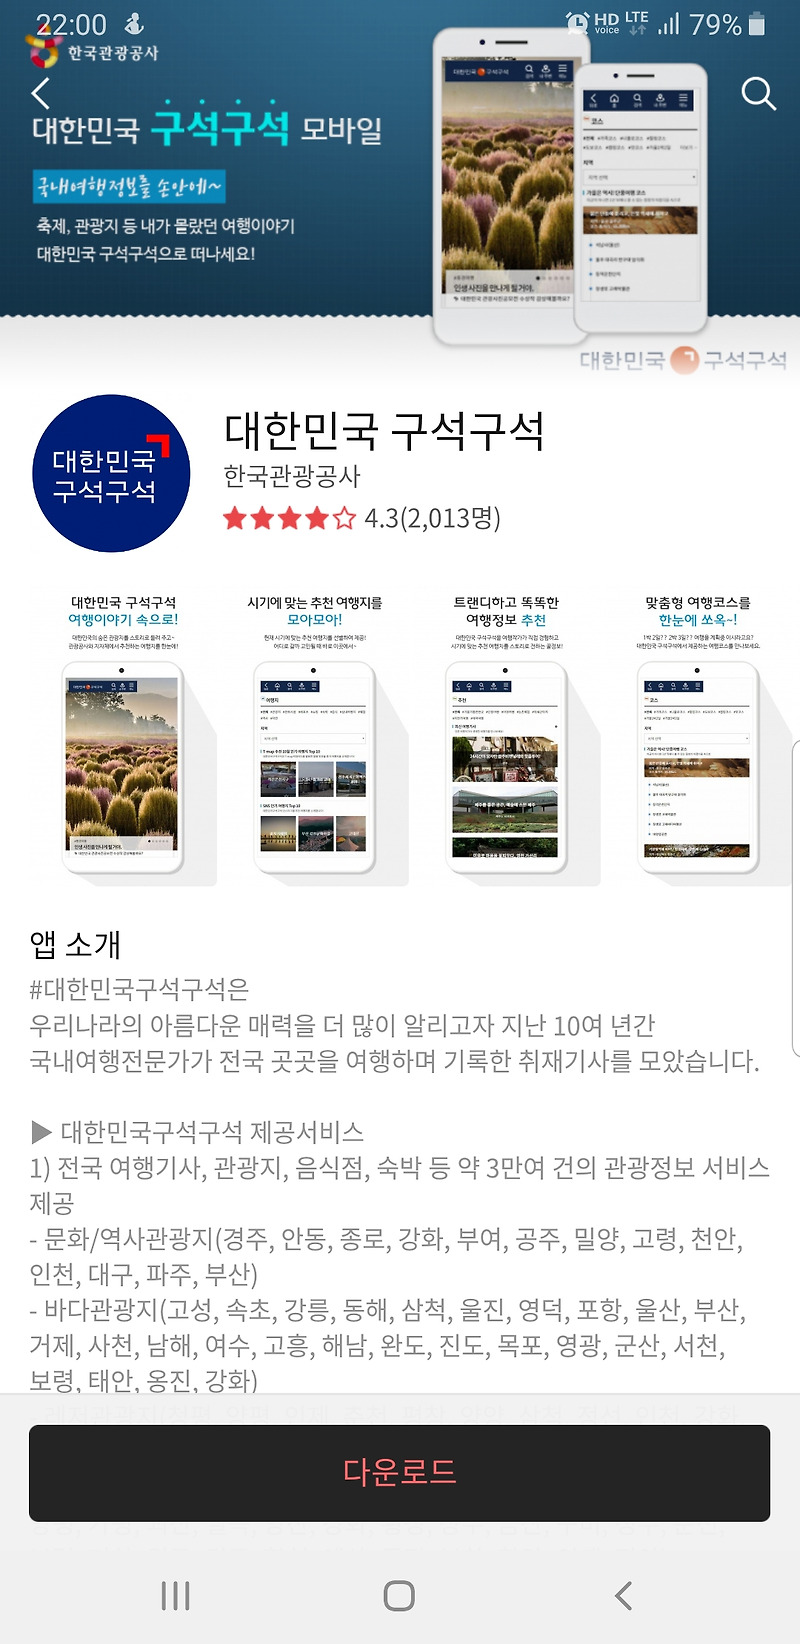 대한민국 구석구석 모바일? 한국관광공사에서 제공하는 국내 최대 여행정보!